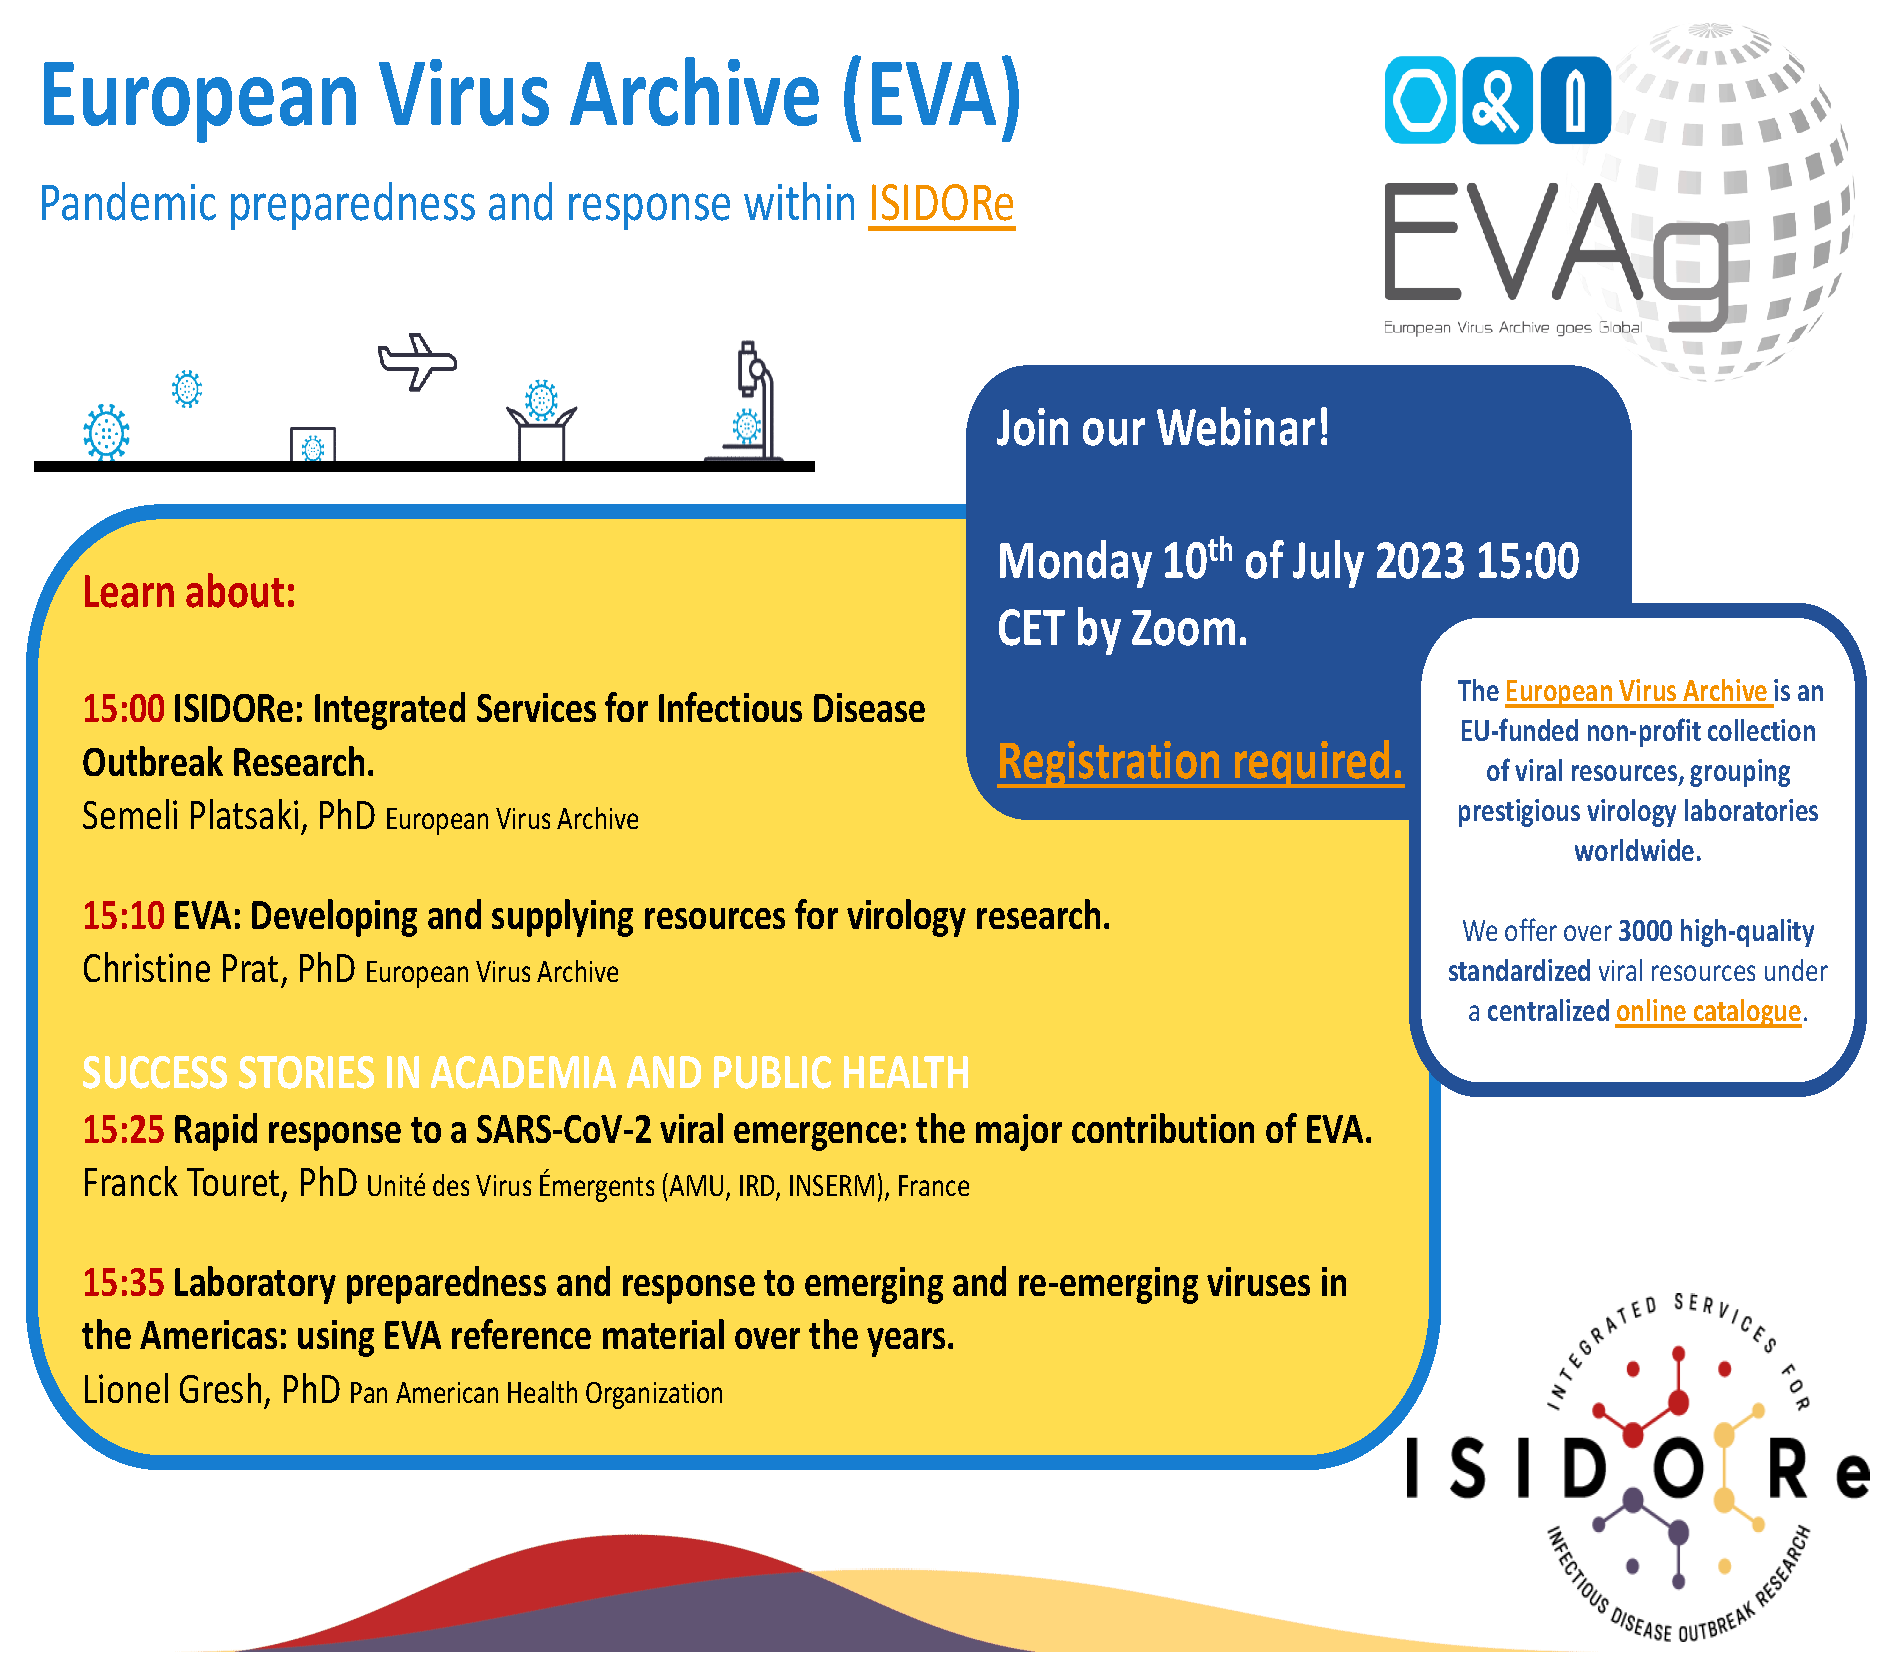 EVA pandemic preparedness and response within ISIDORE